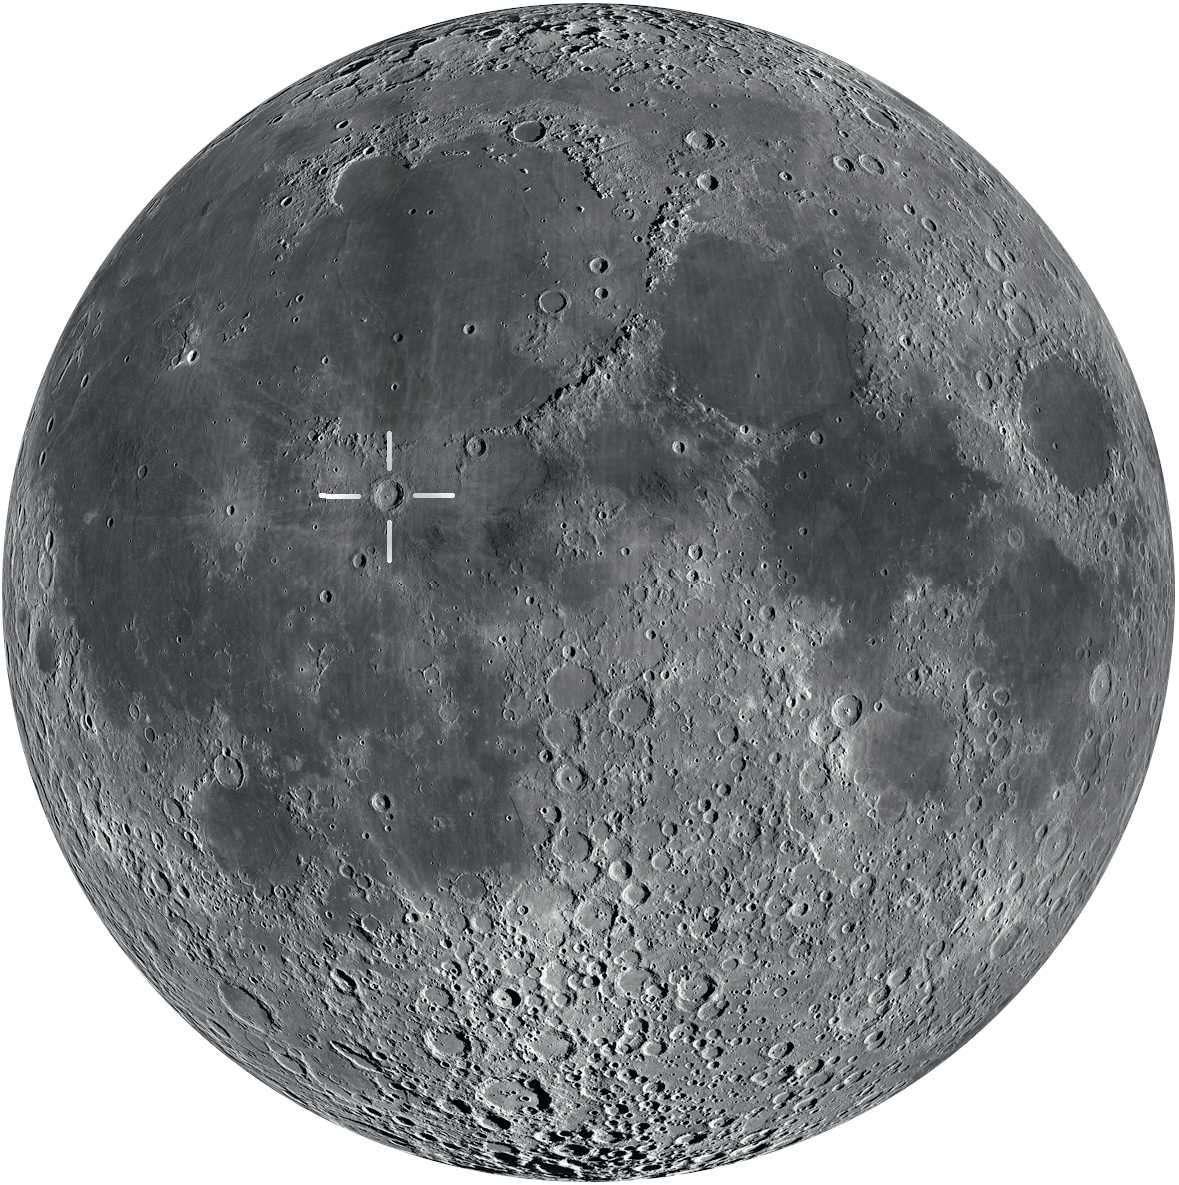 Copernicus hittar du nära månens mitt. Den syns bäst från första kvarteret till kort före fullmånen.